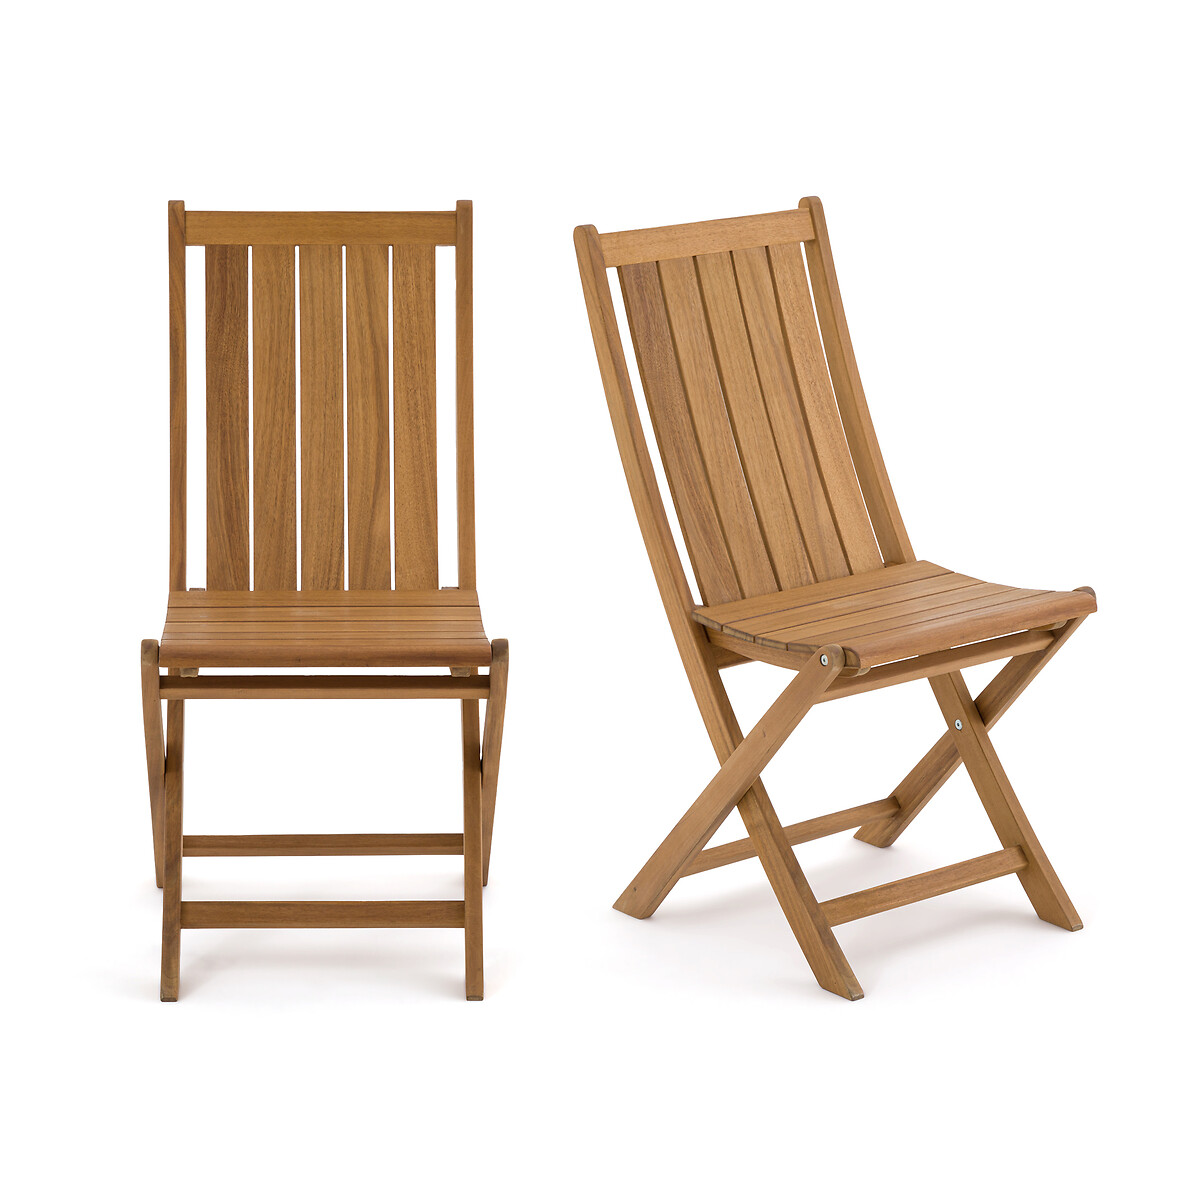 Комплект из двух стульев складных для сада из акации Palera единый размер бежевый комплект из двух велюровых стульев ins единый размер бежевый